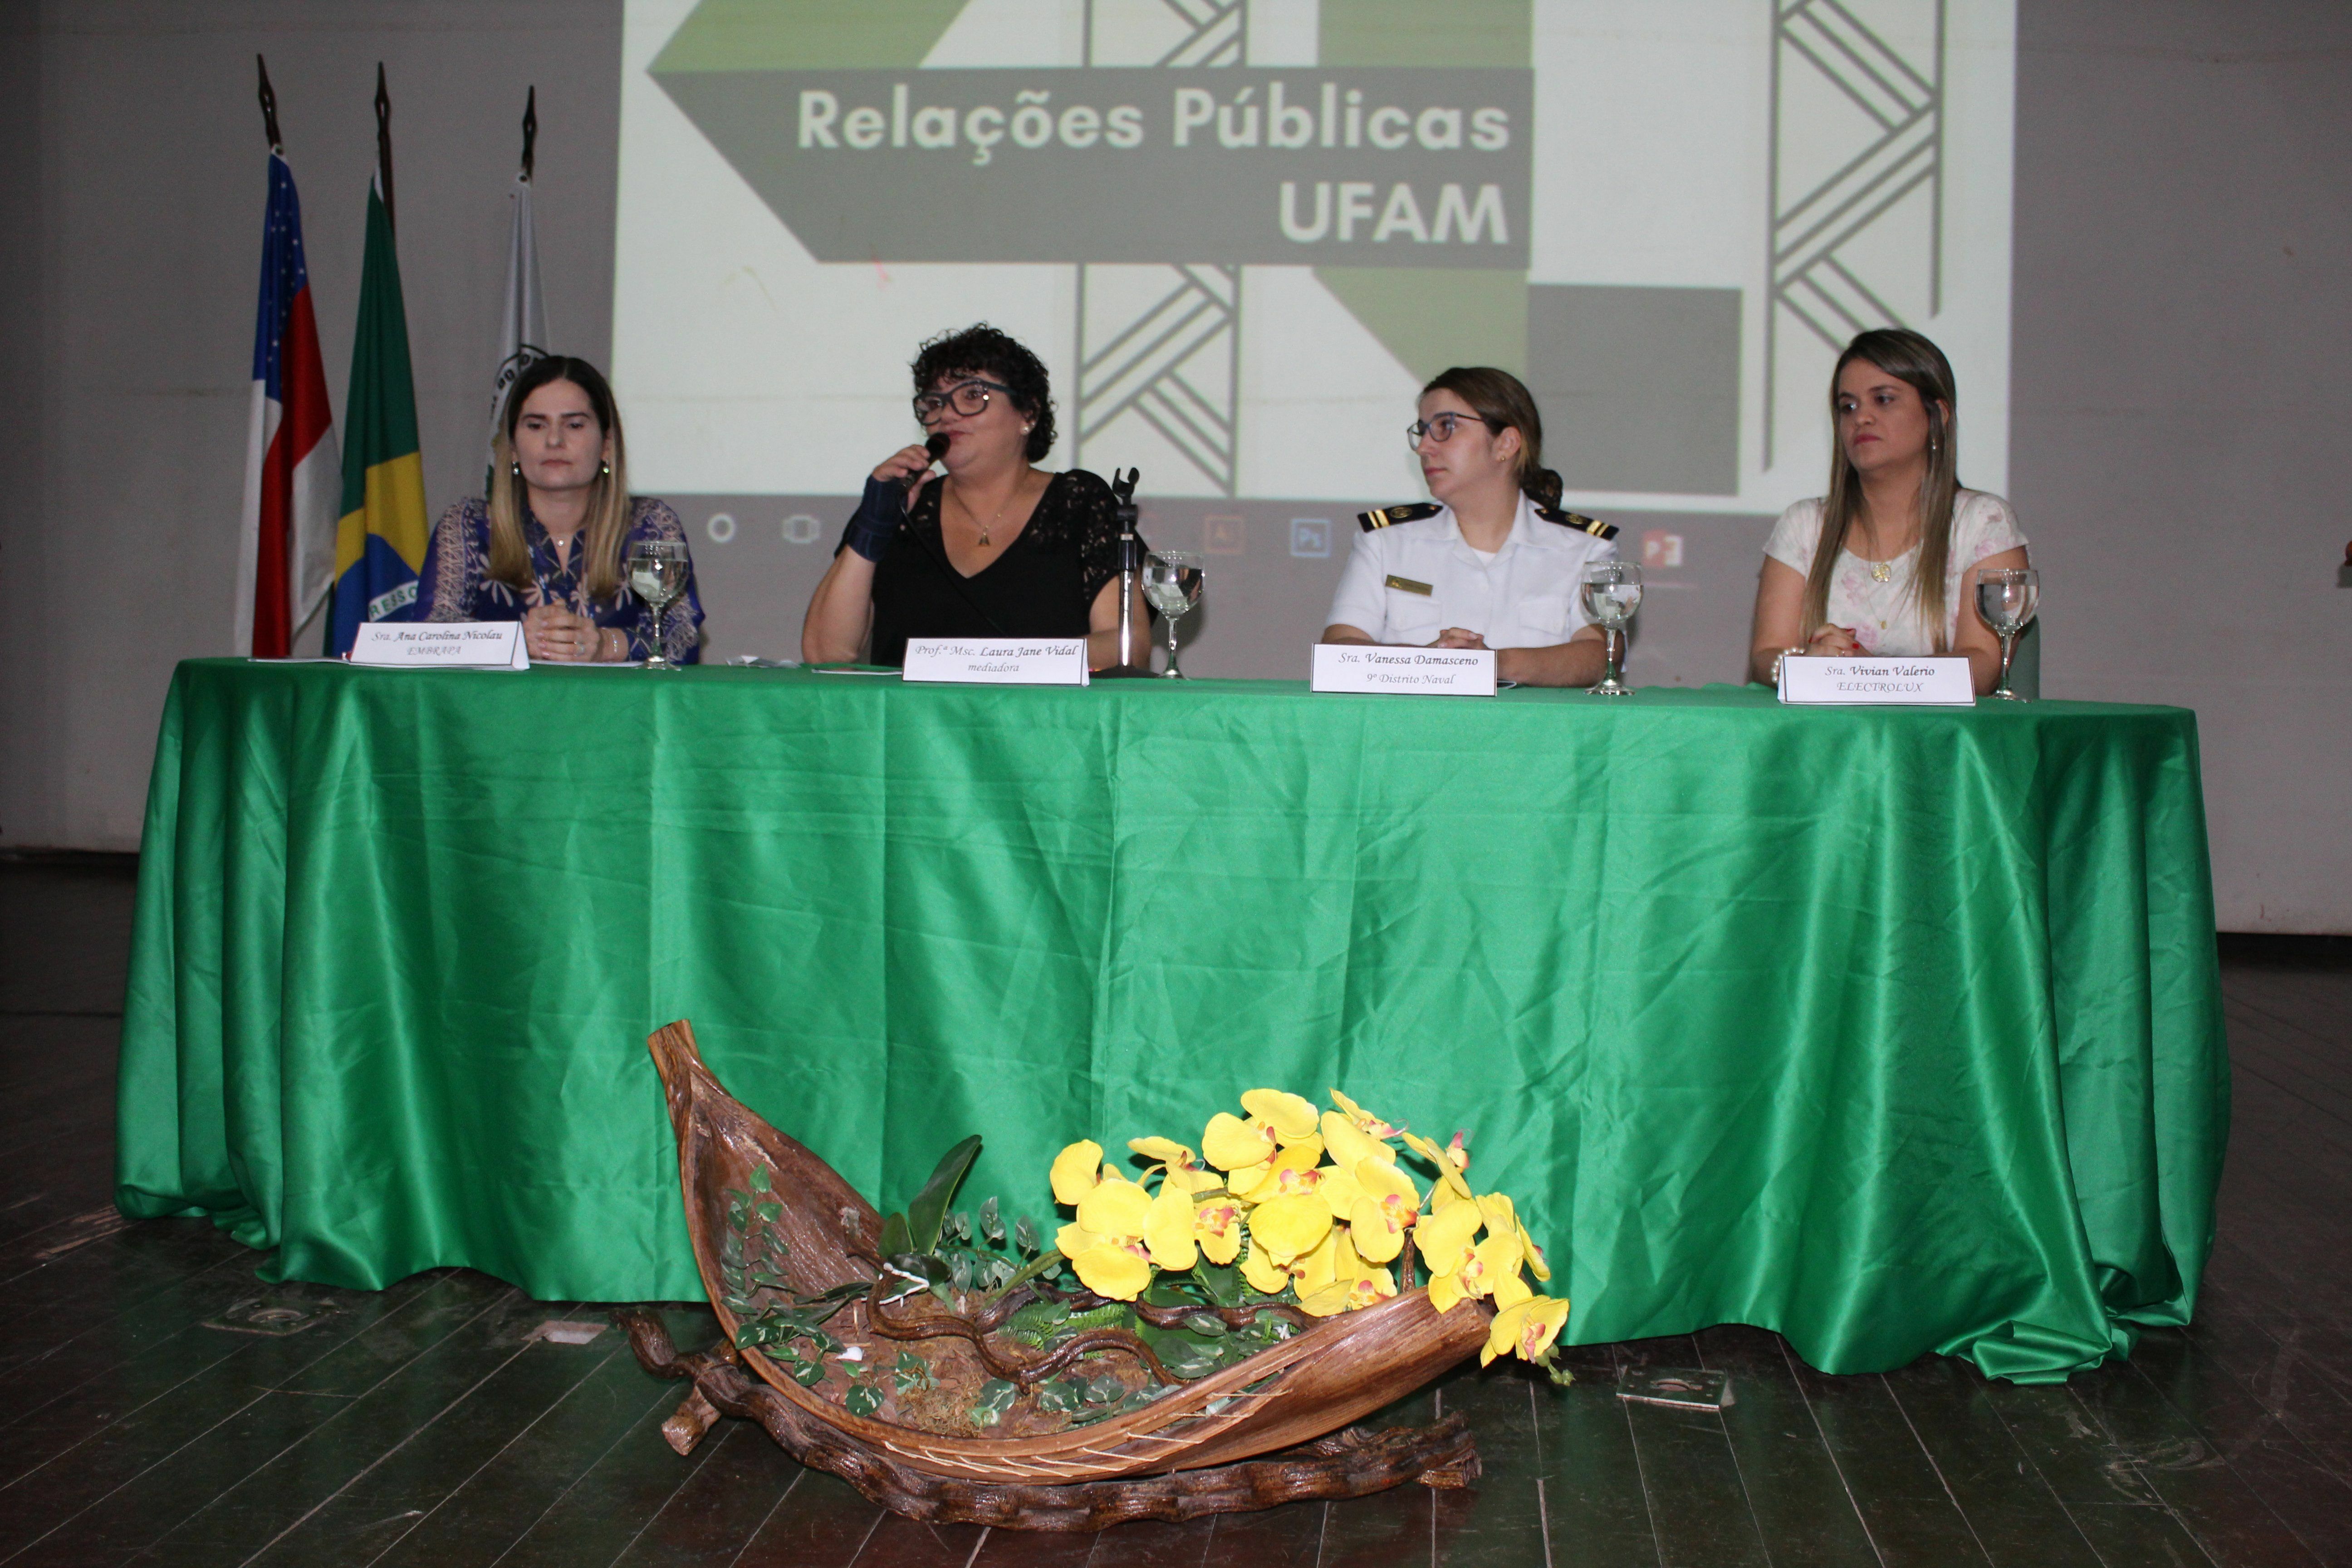 Egressas do curso: Ana Carolina Nicolau, Vanessa Damasceno e Vivian Valério. Mediadora: Prof. Laura Jane Vidal